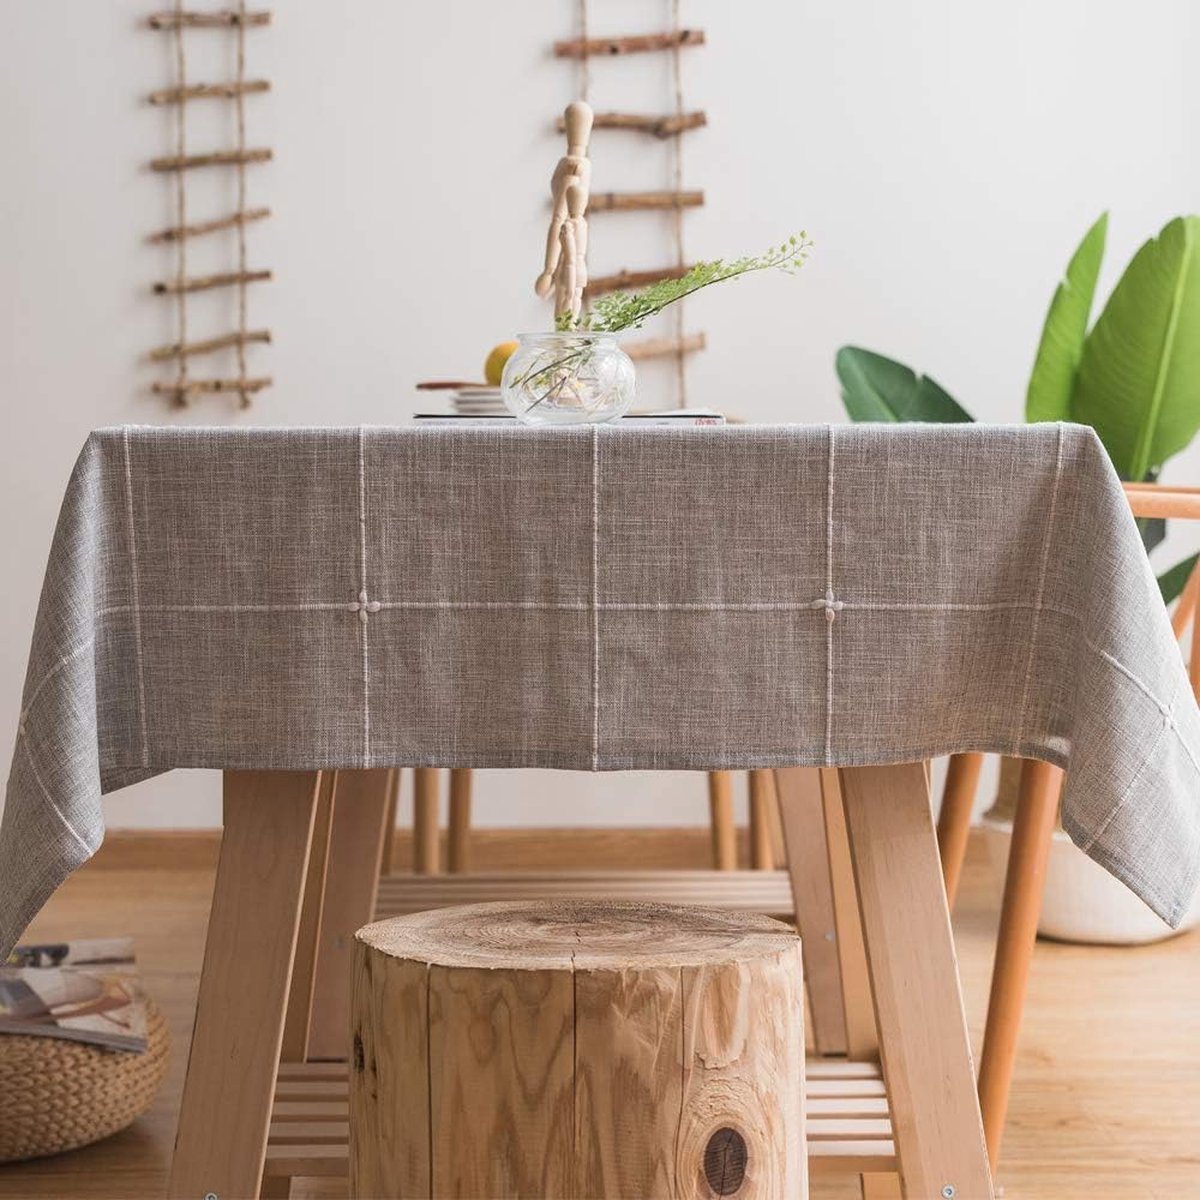 Katoenen linnen tafelkleed voor rechthoekige tafels solide mesh borduurwerk tafelbedekking voor keuken eettafel decoratie (135x300 cm, grijs)